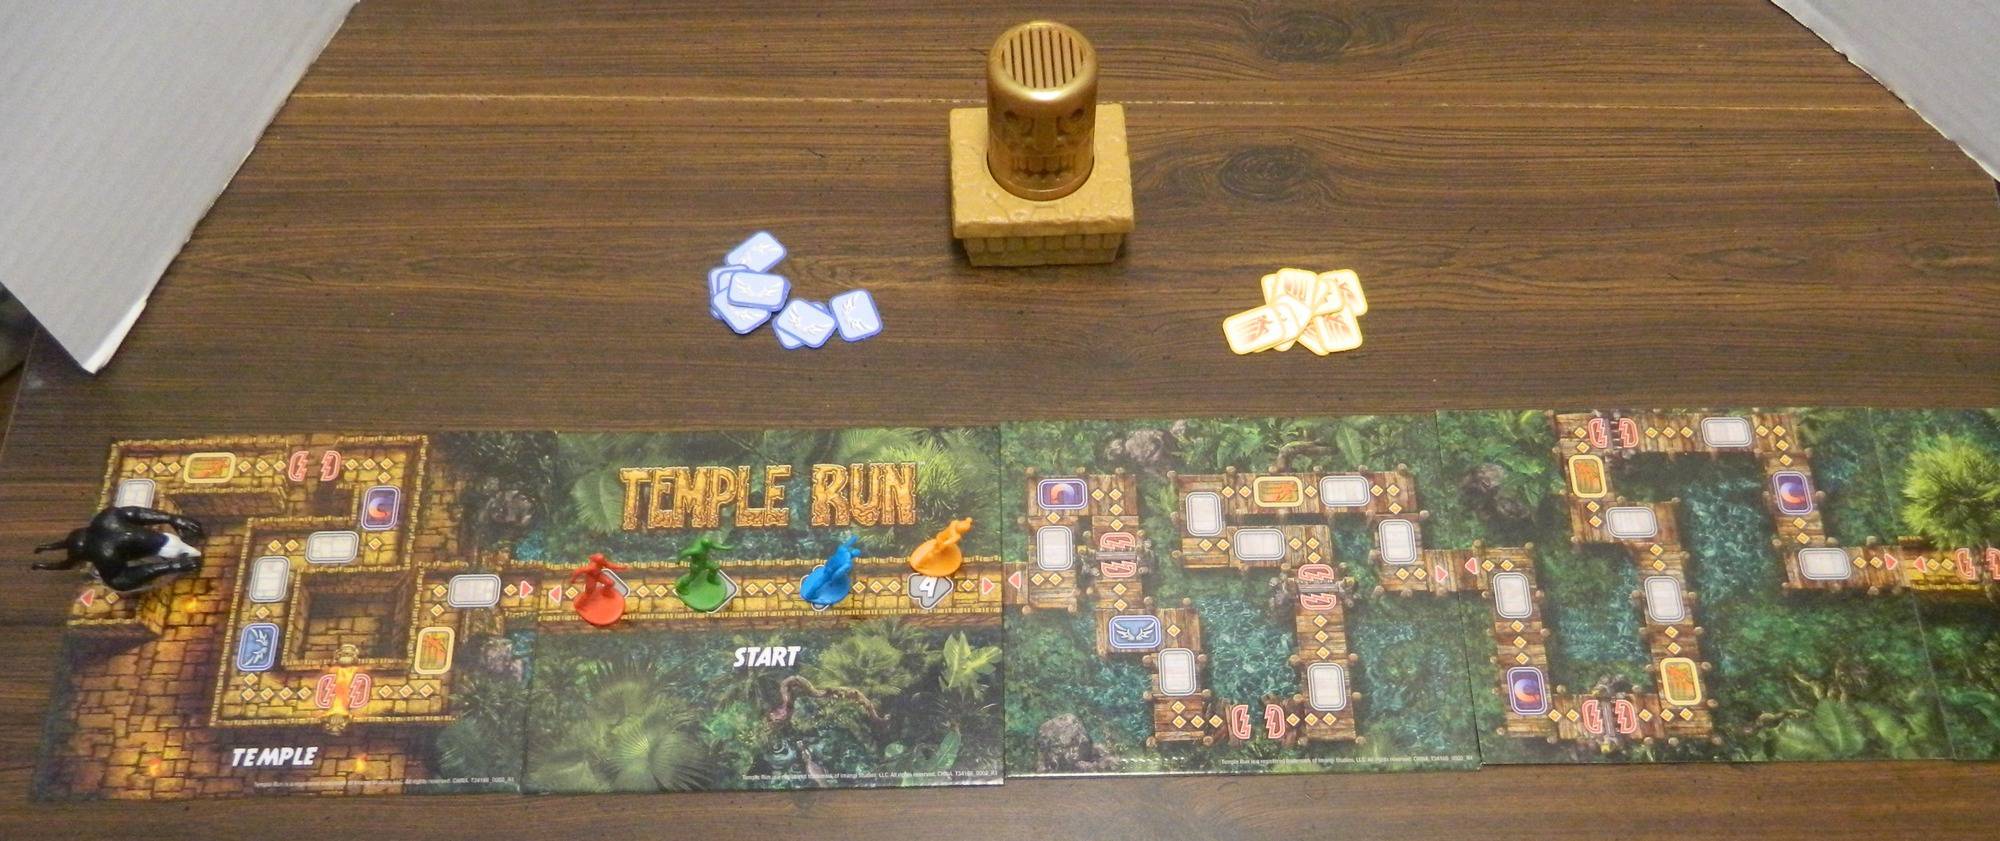 Temple Run  Play Temple Run Game